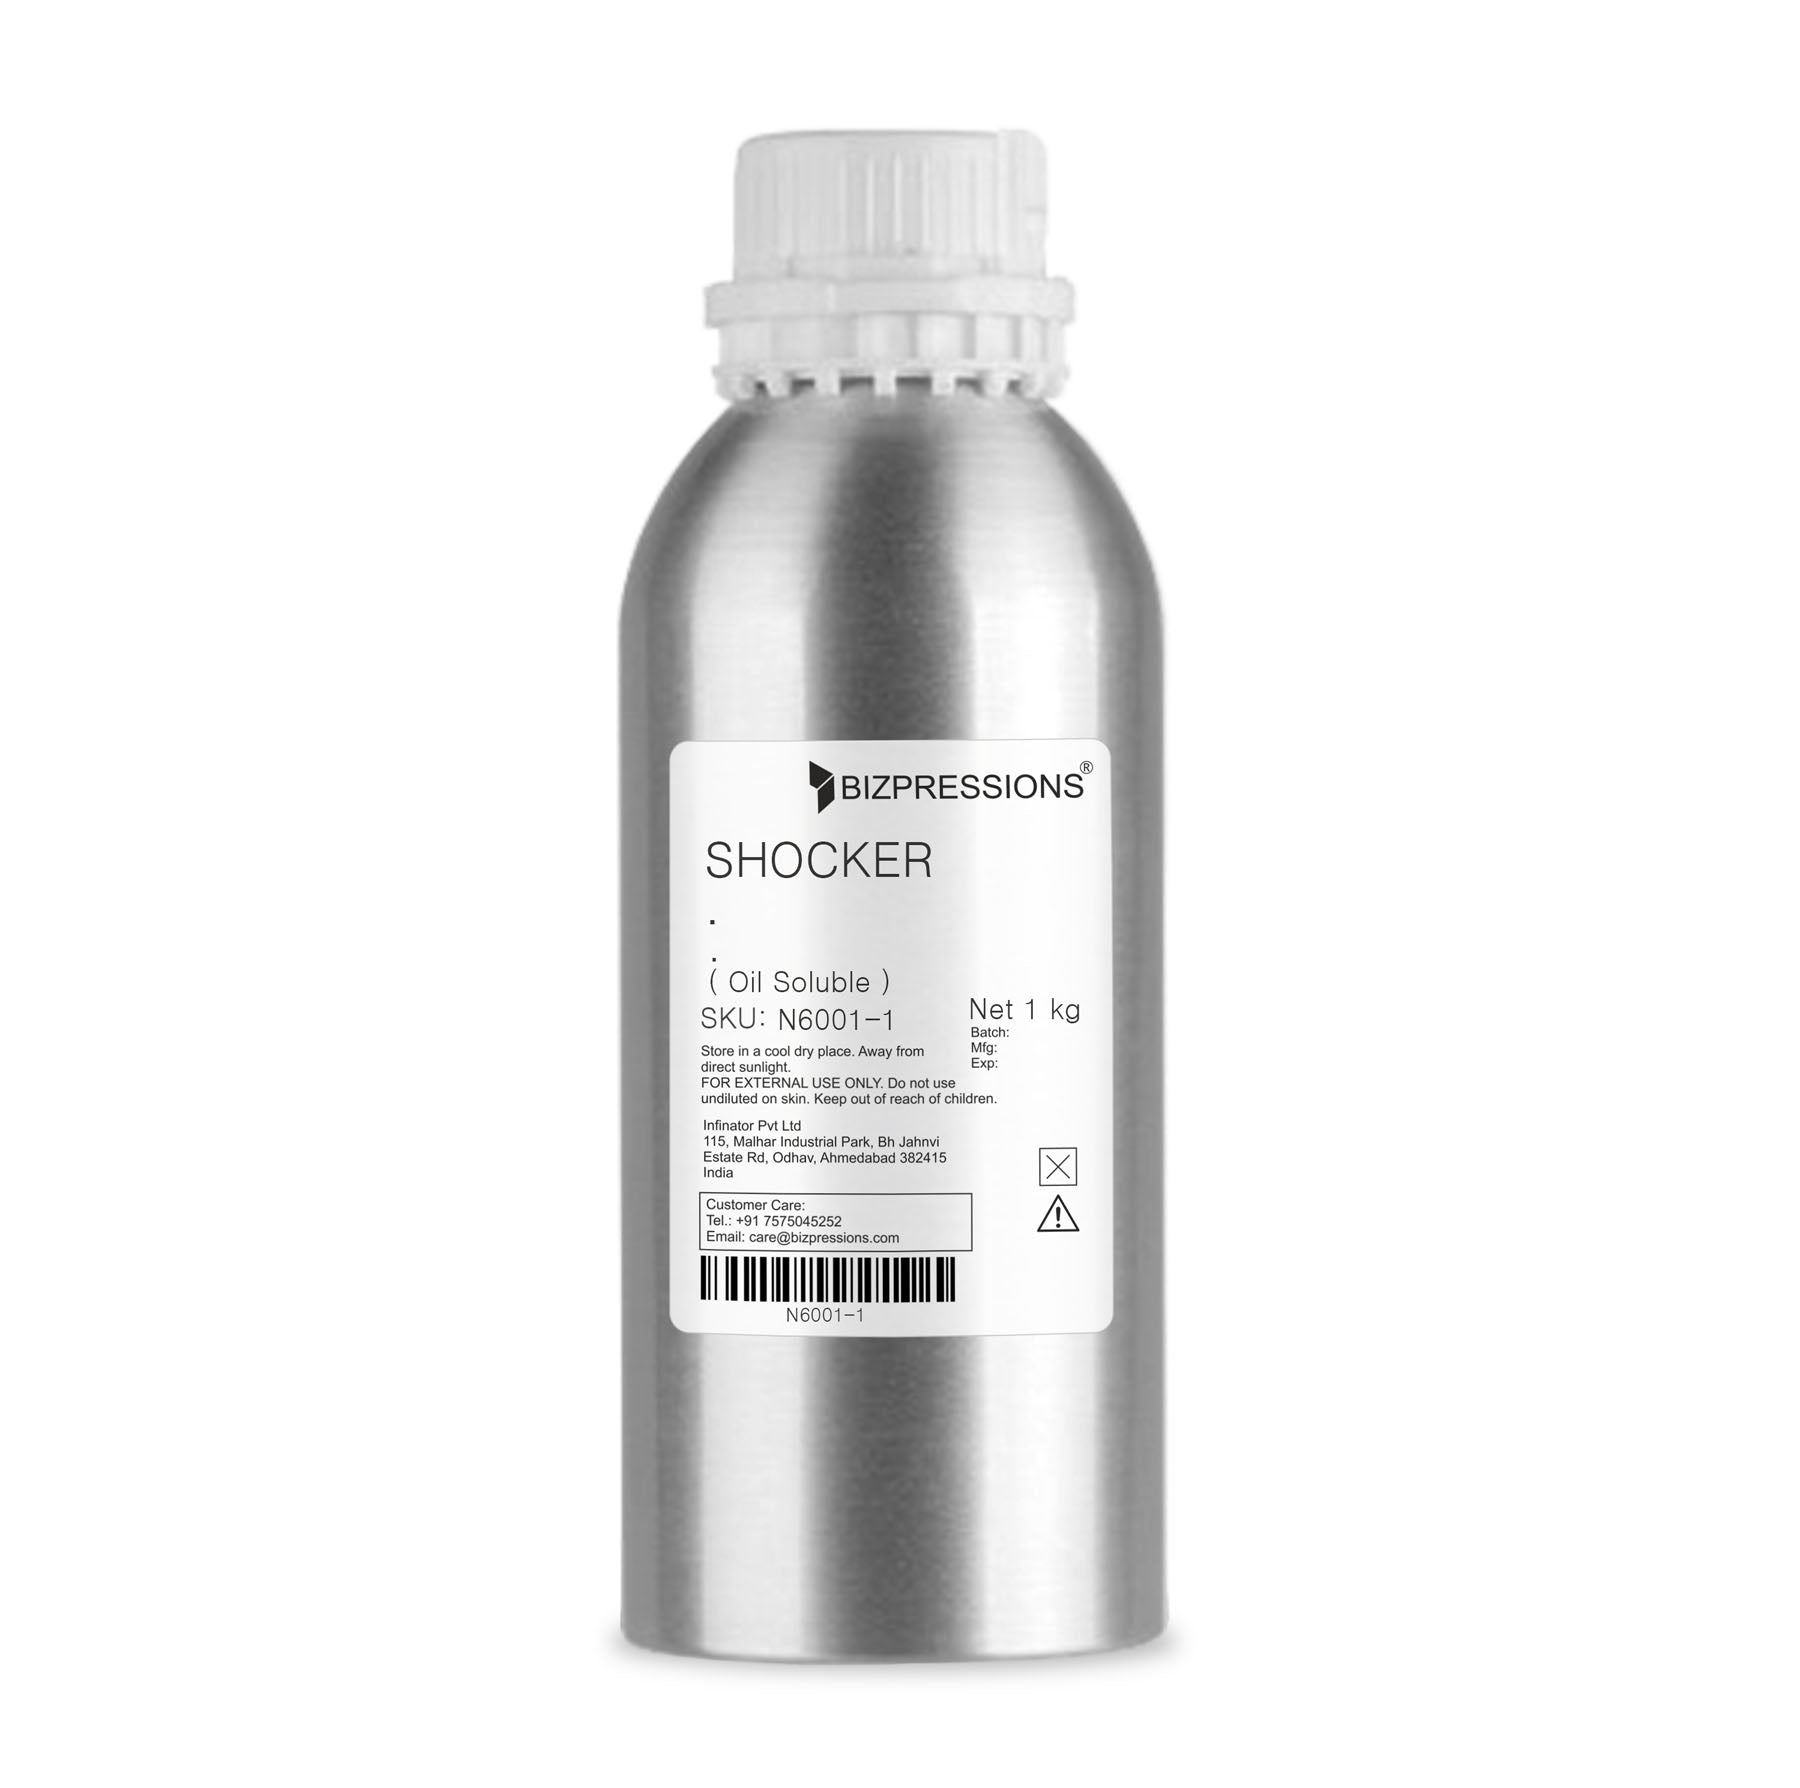 SHOCKER - Fragrance ( Oil Soluble ) - 1 kg